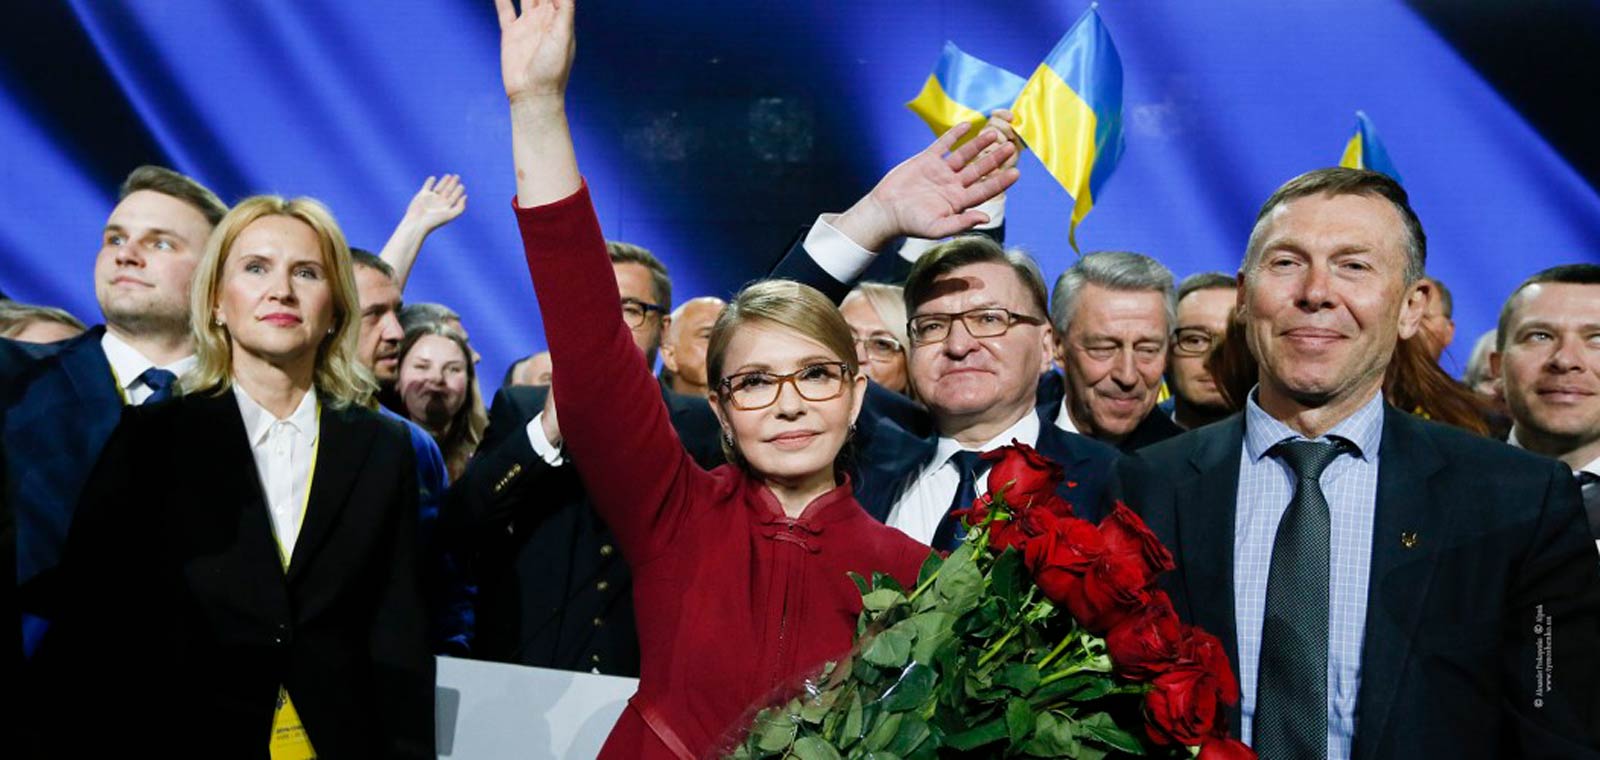 Сверхновая Она. Какой Тимошенко идет на выборы